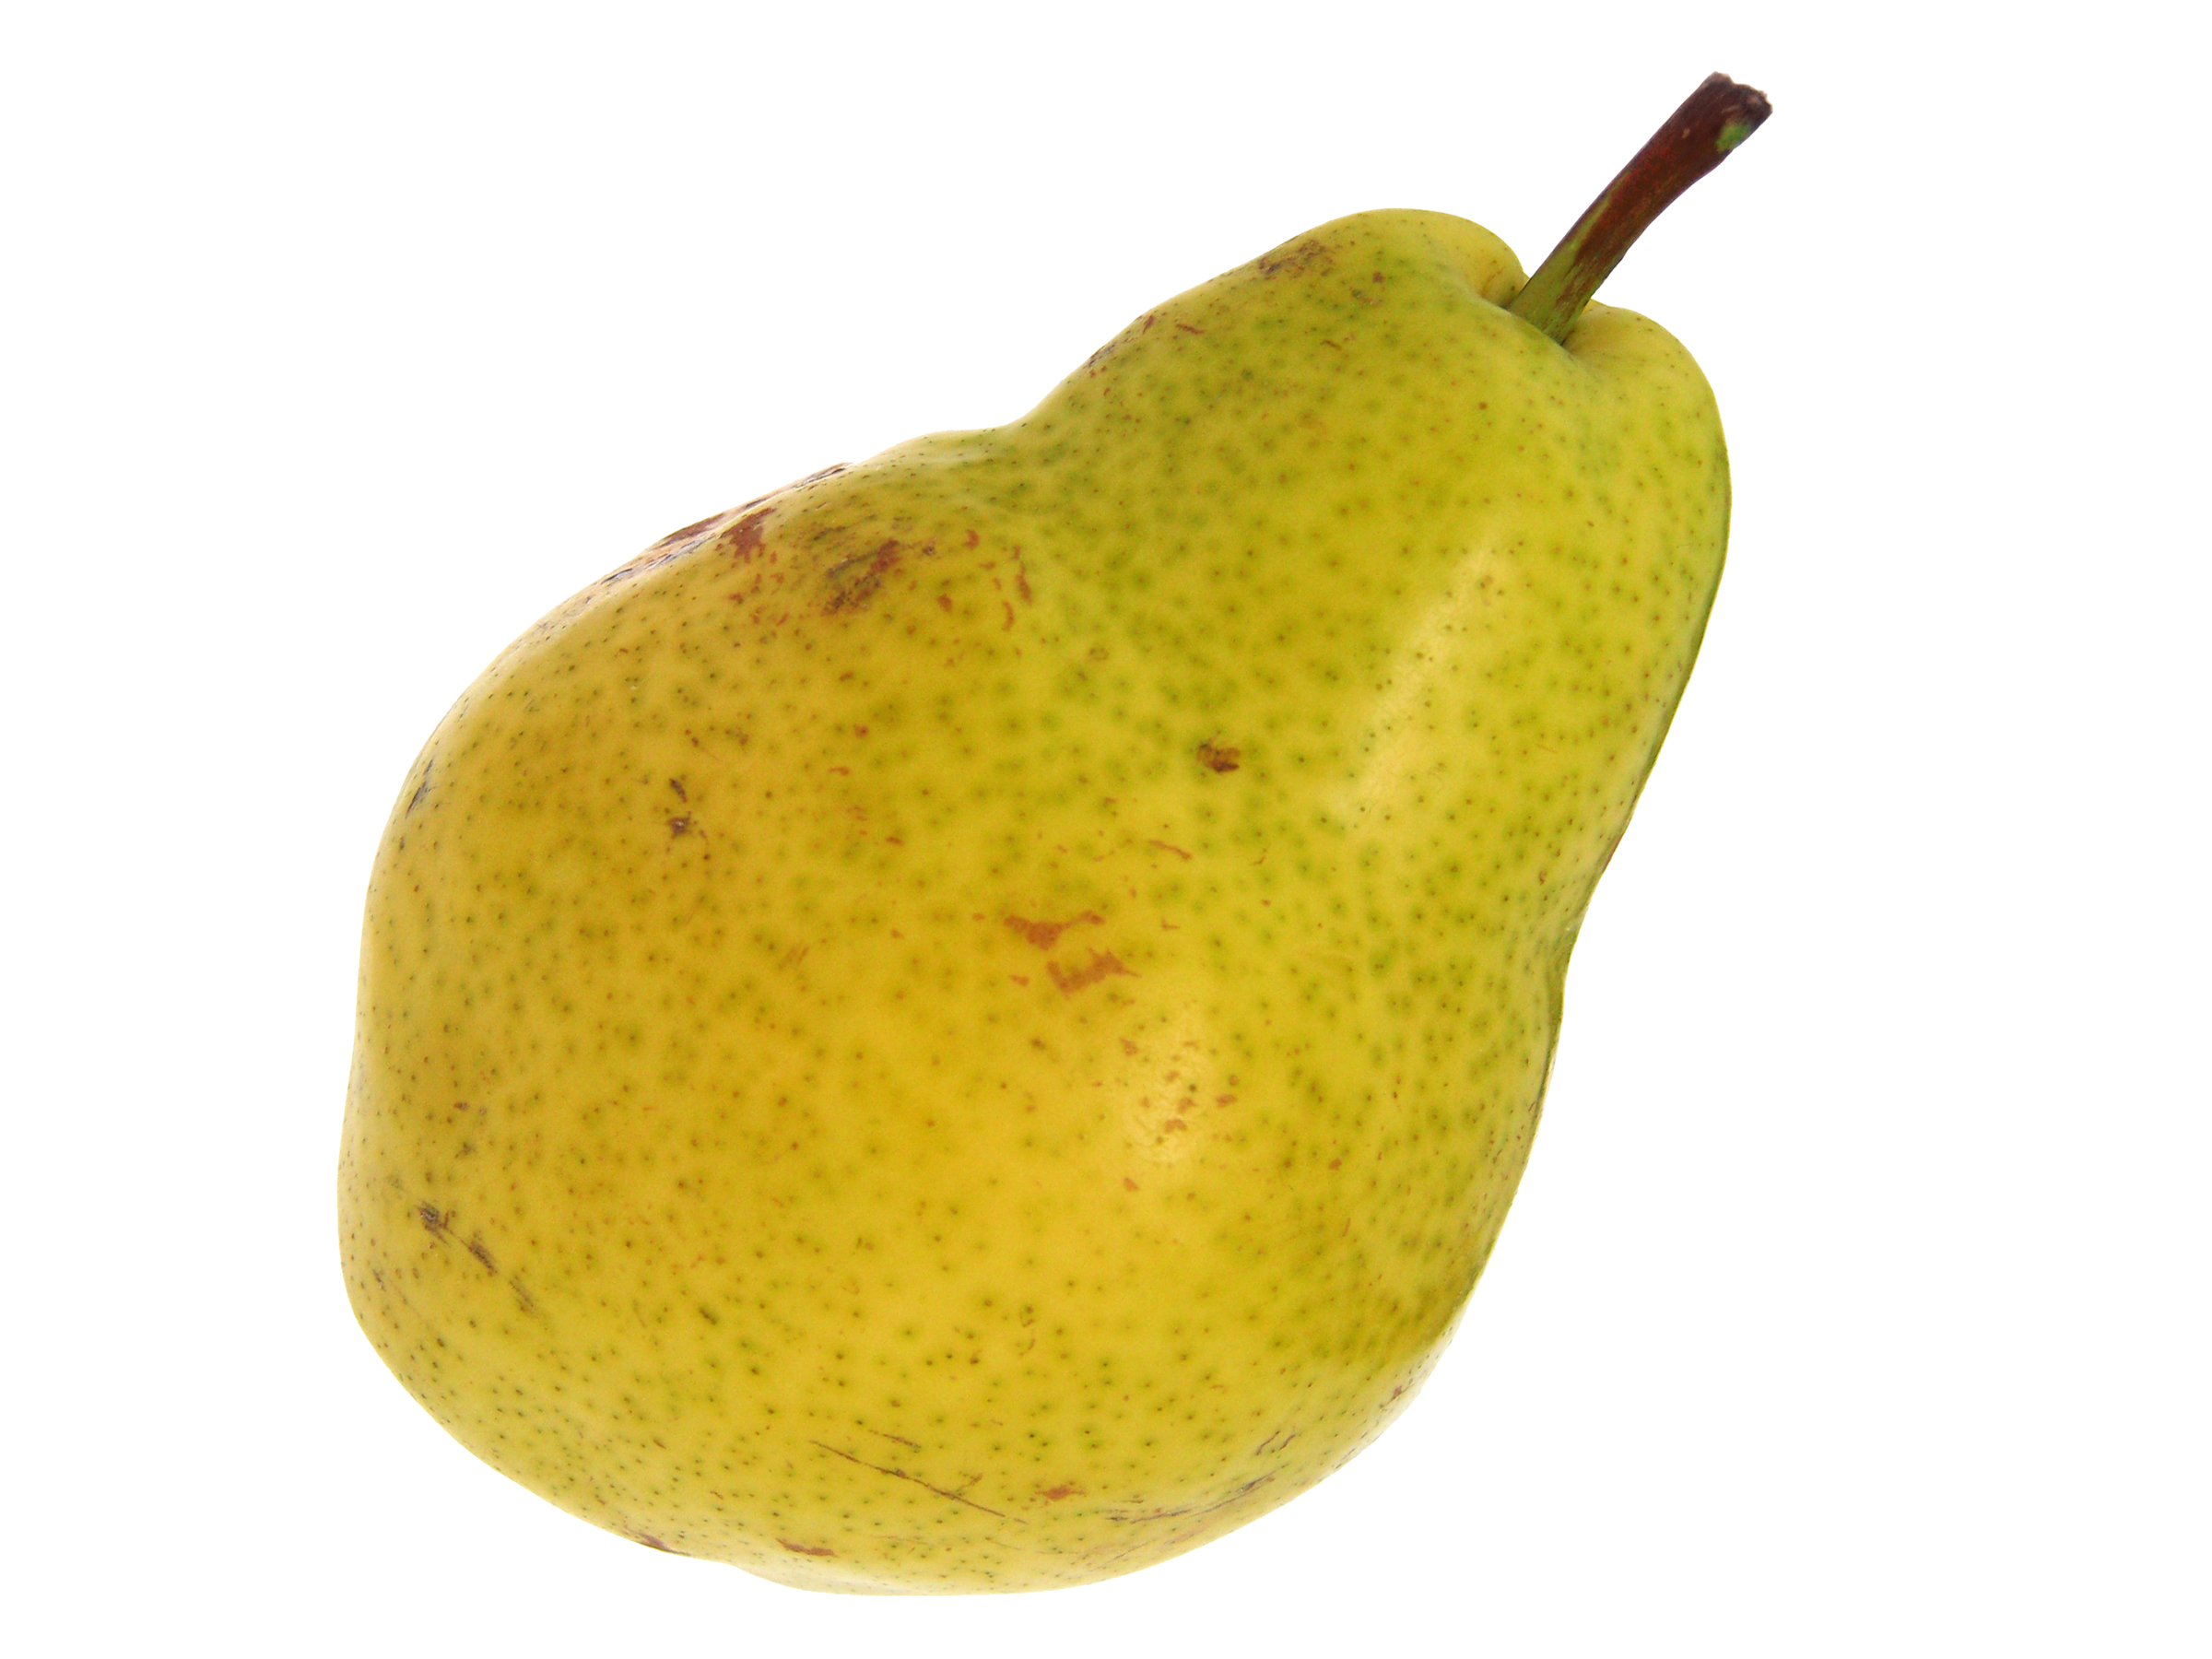 Pear photo